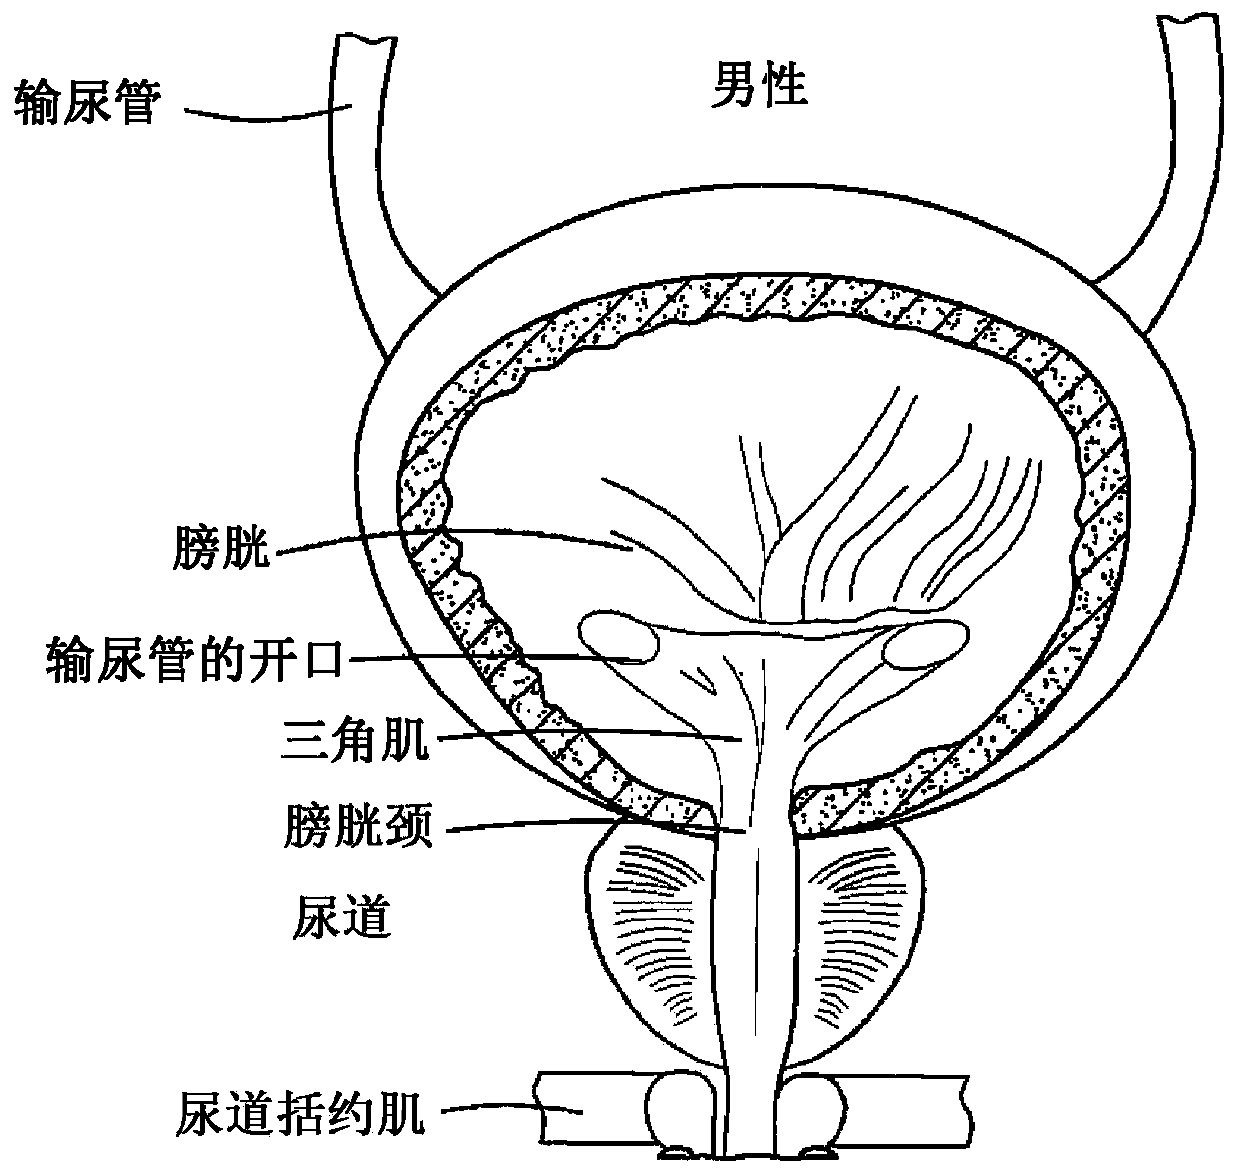 Urological stent